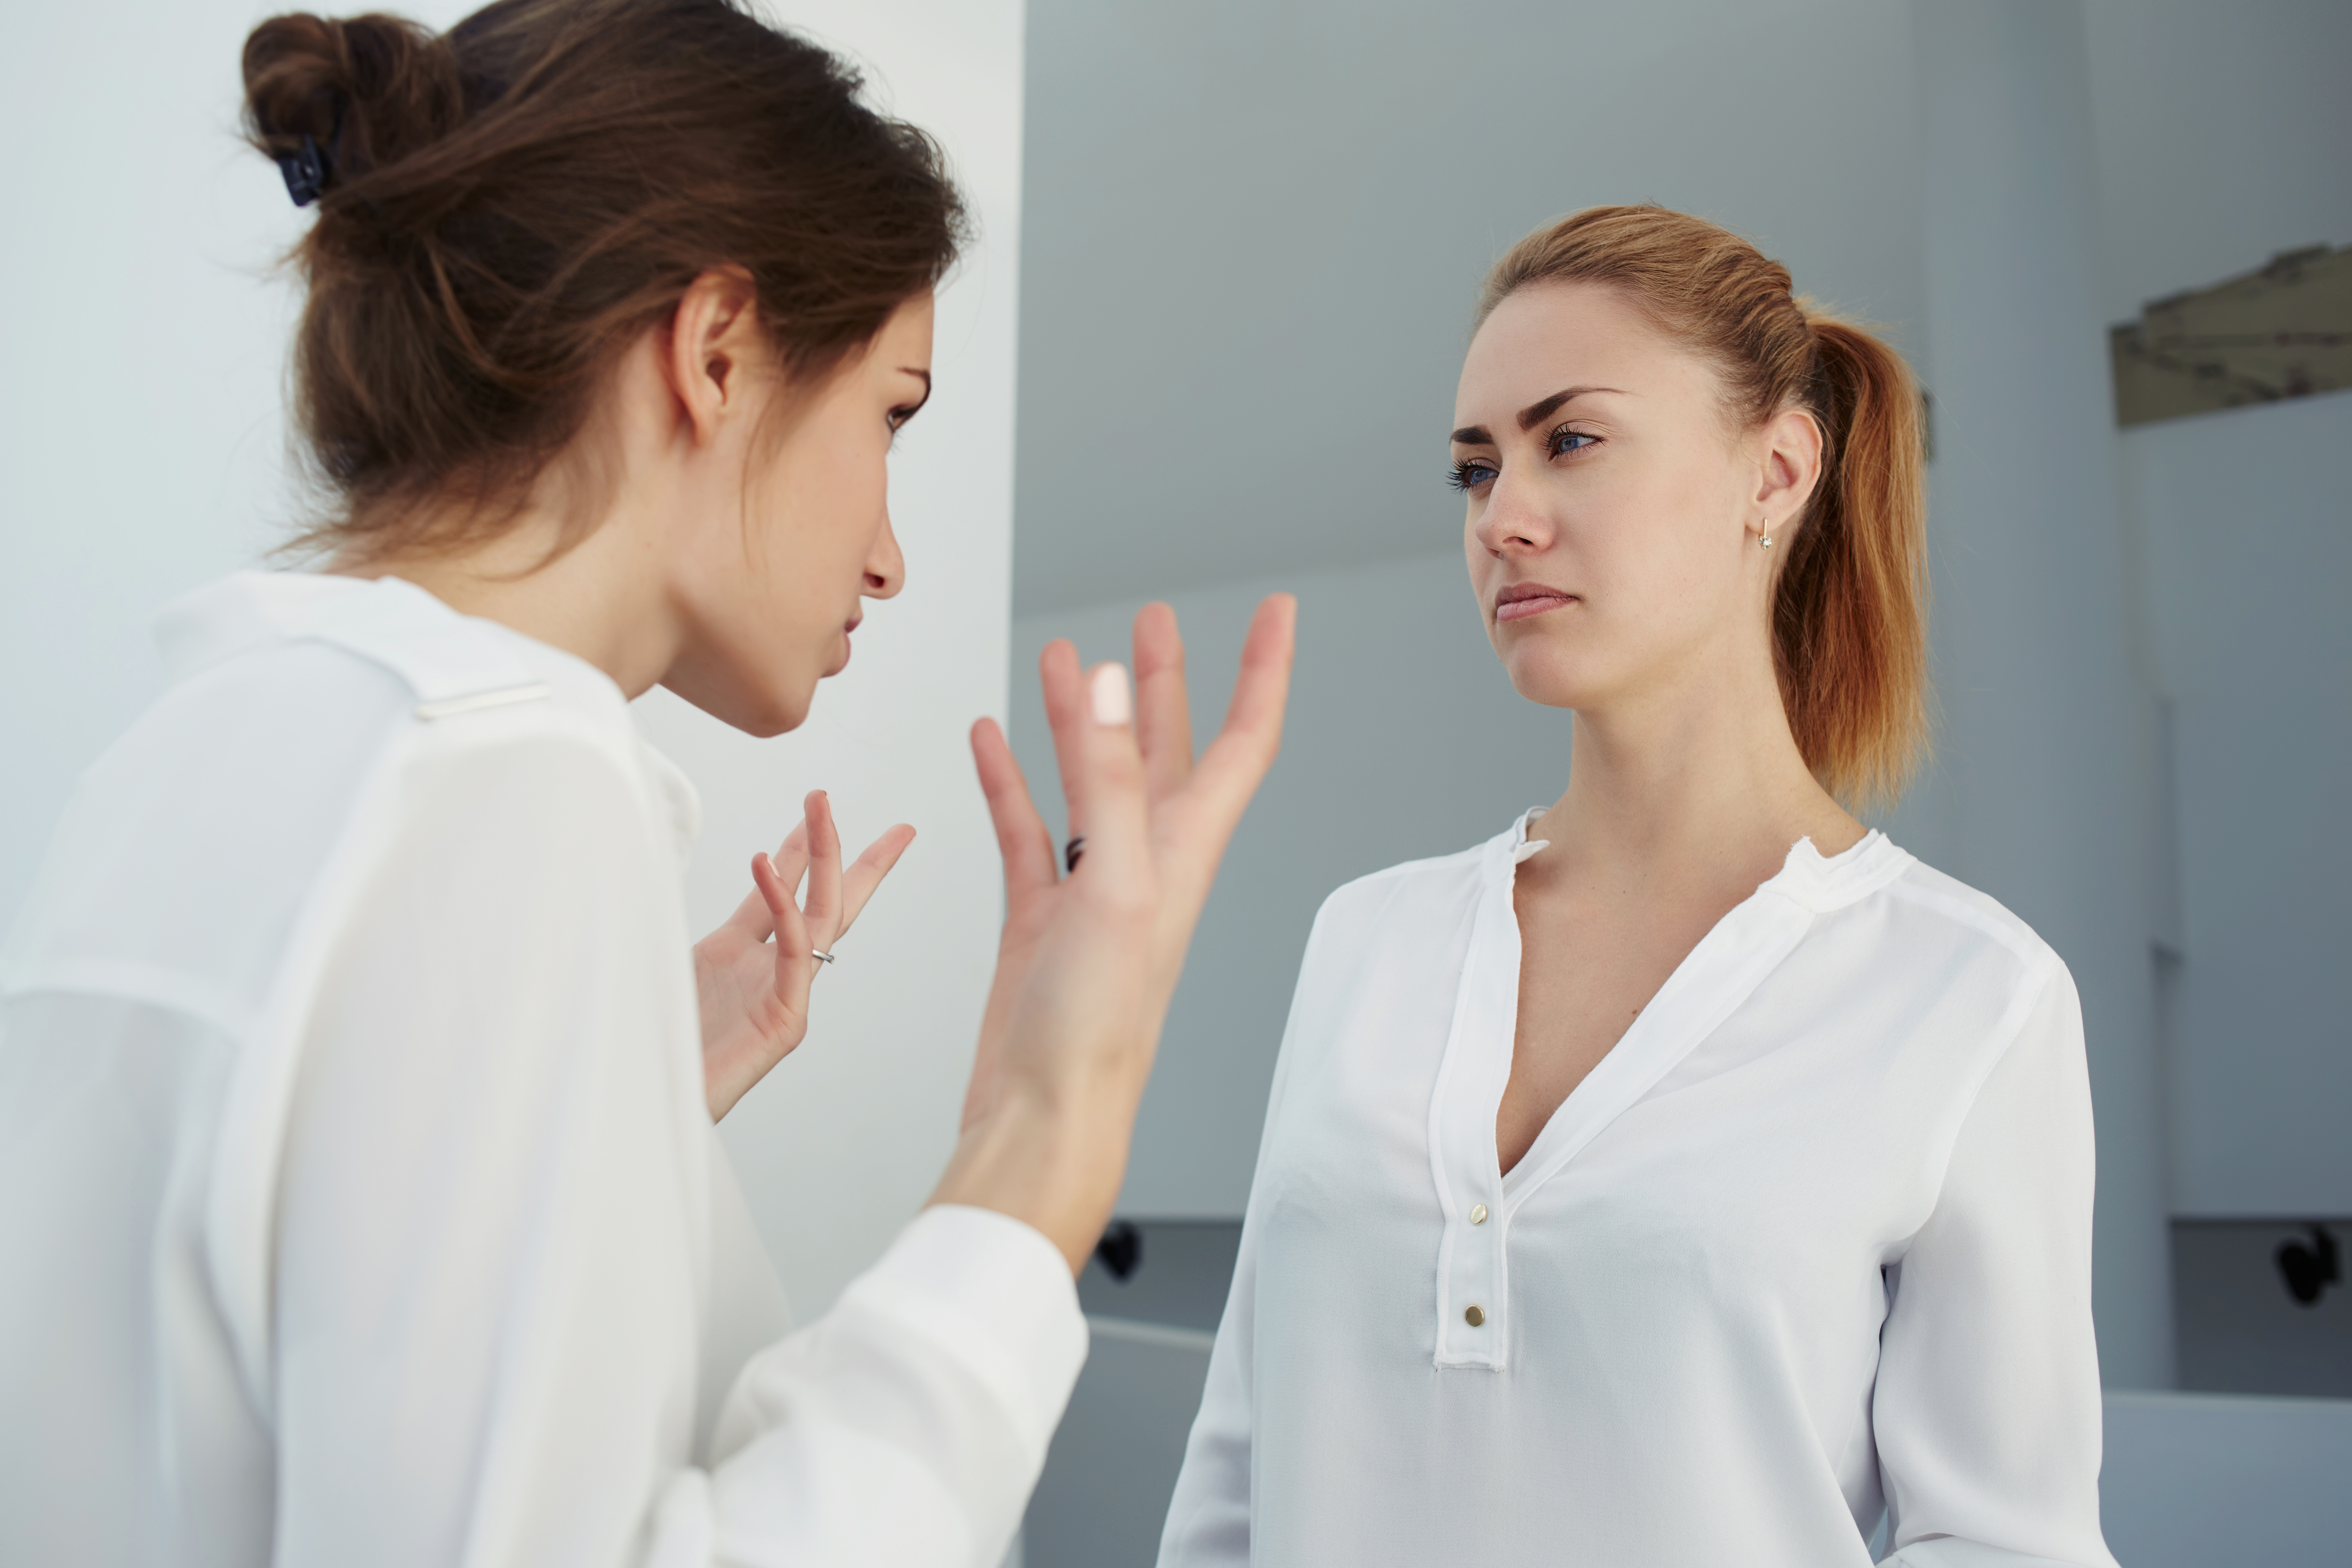 A boss reprimanding employee | Source: Shutterstock